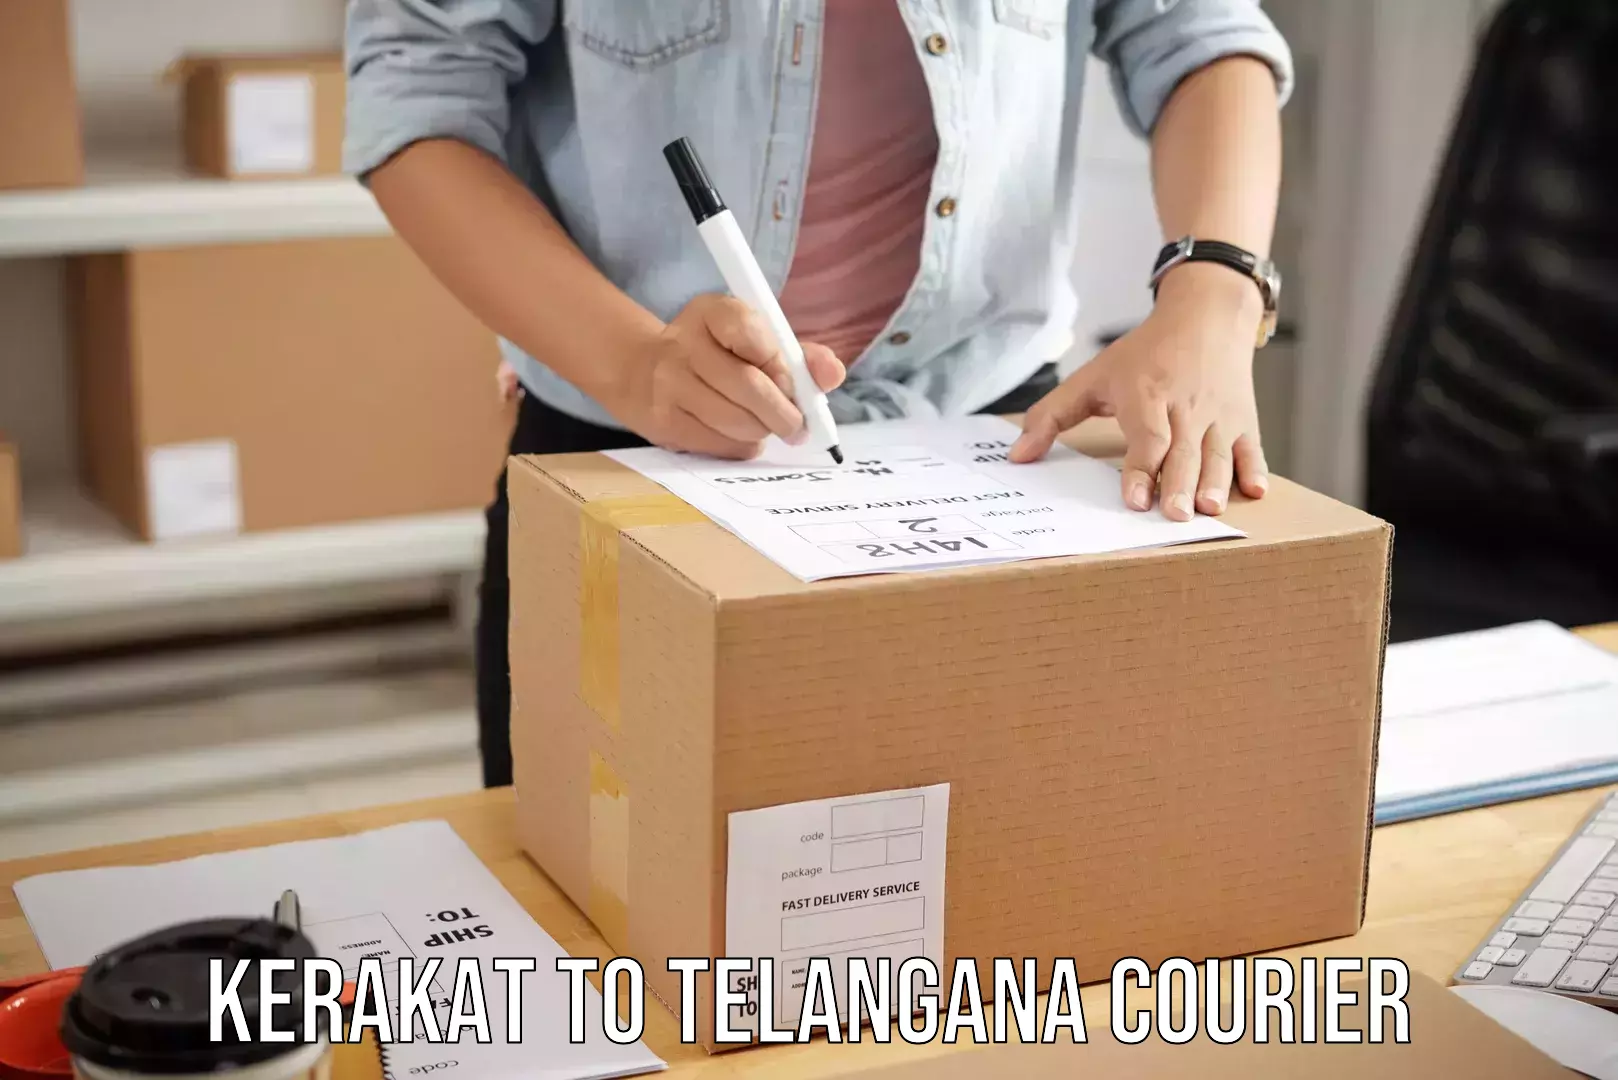 Baggage transport services Kerakat to Telangana